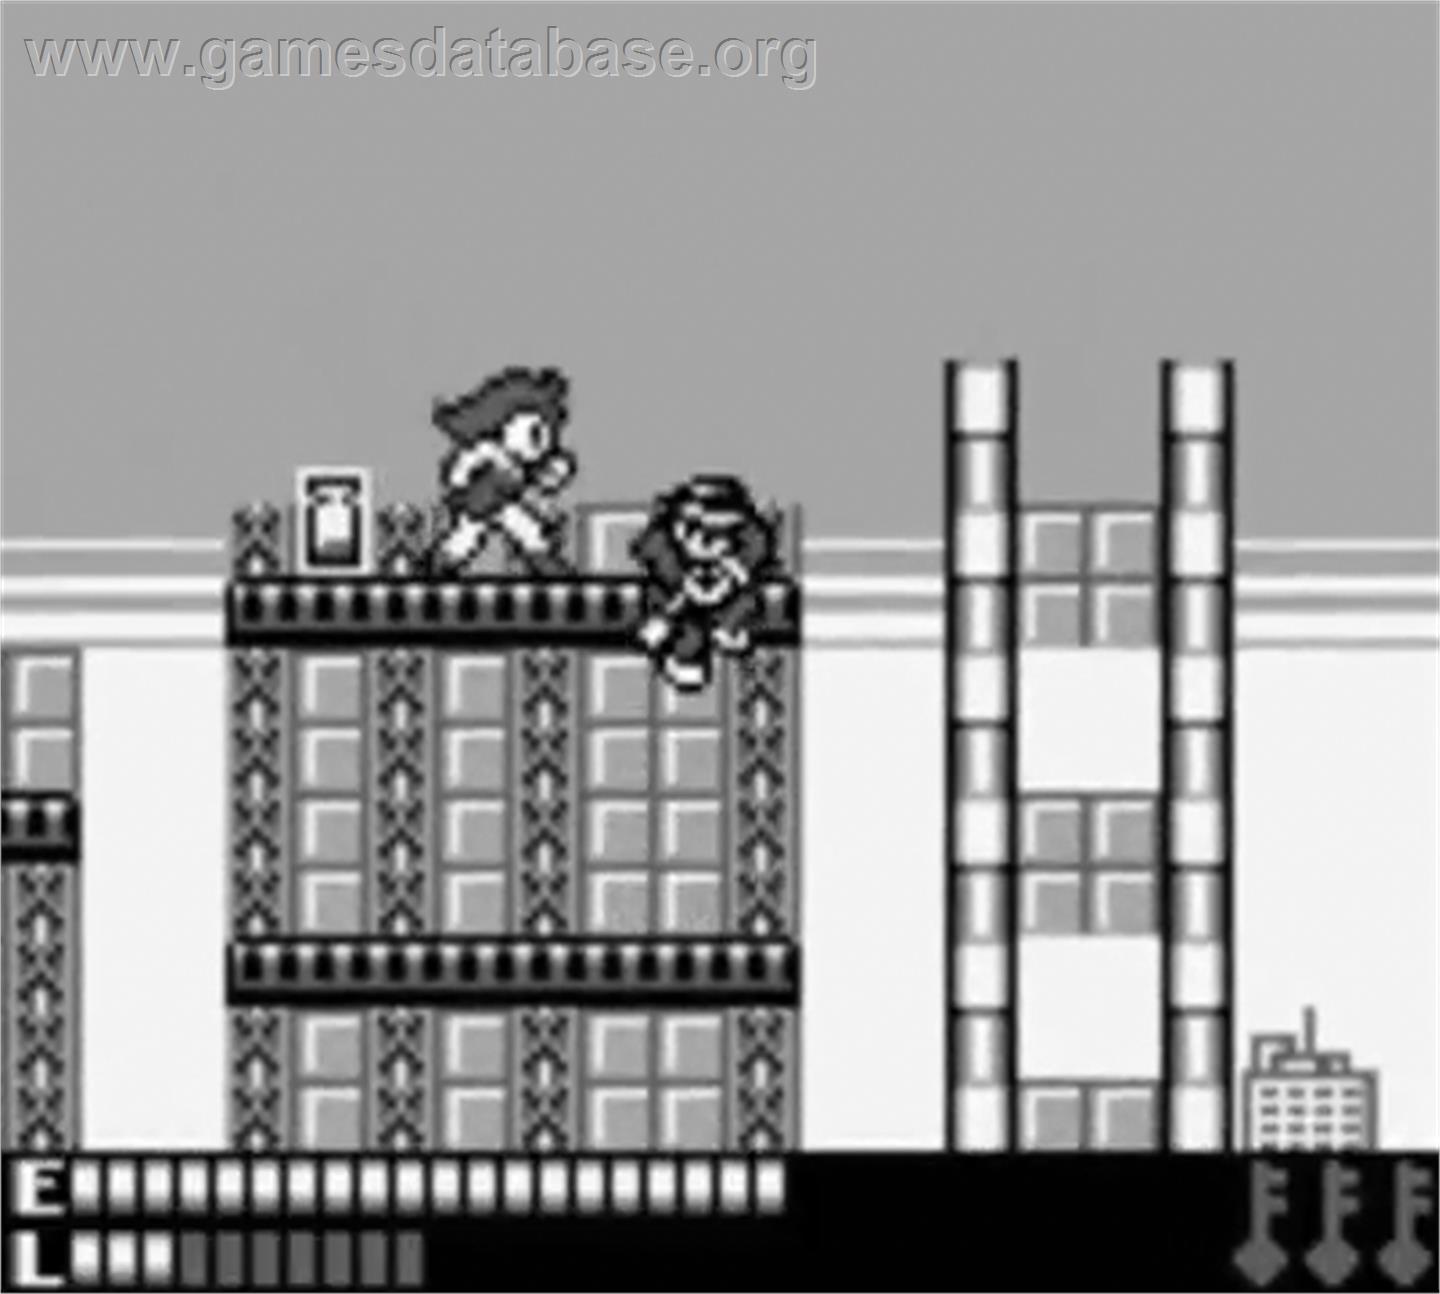 Avenging Spirit - Nintendo Game Boy - Artwork - In Game